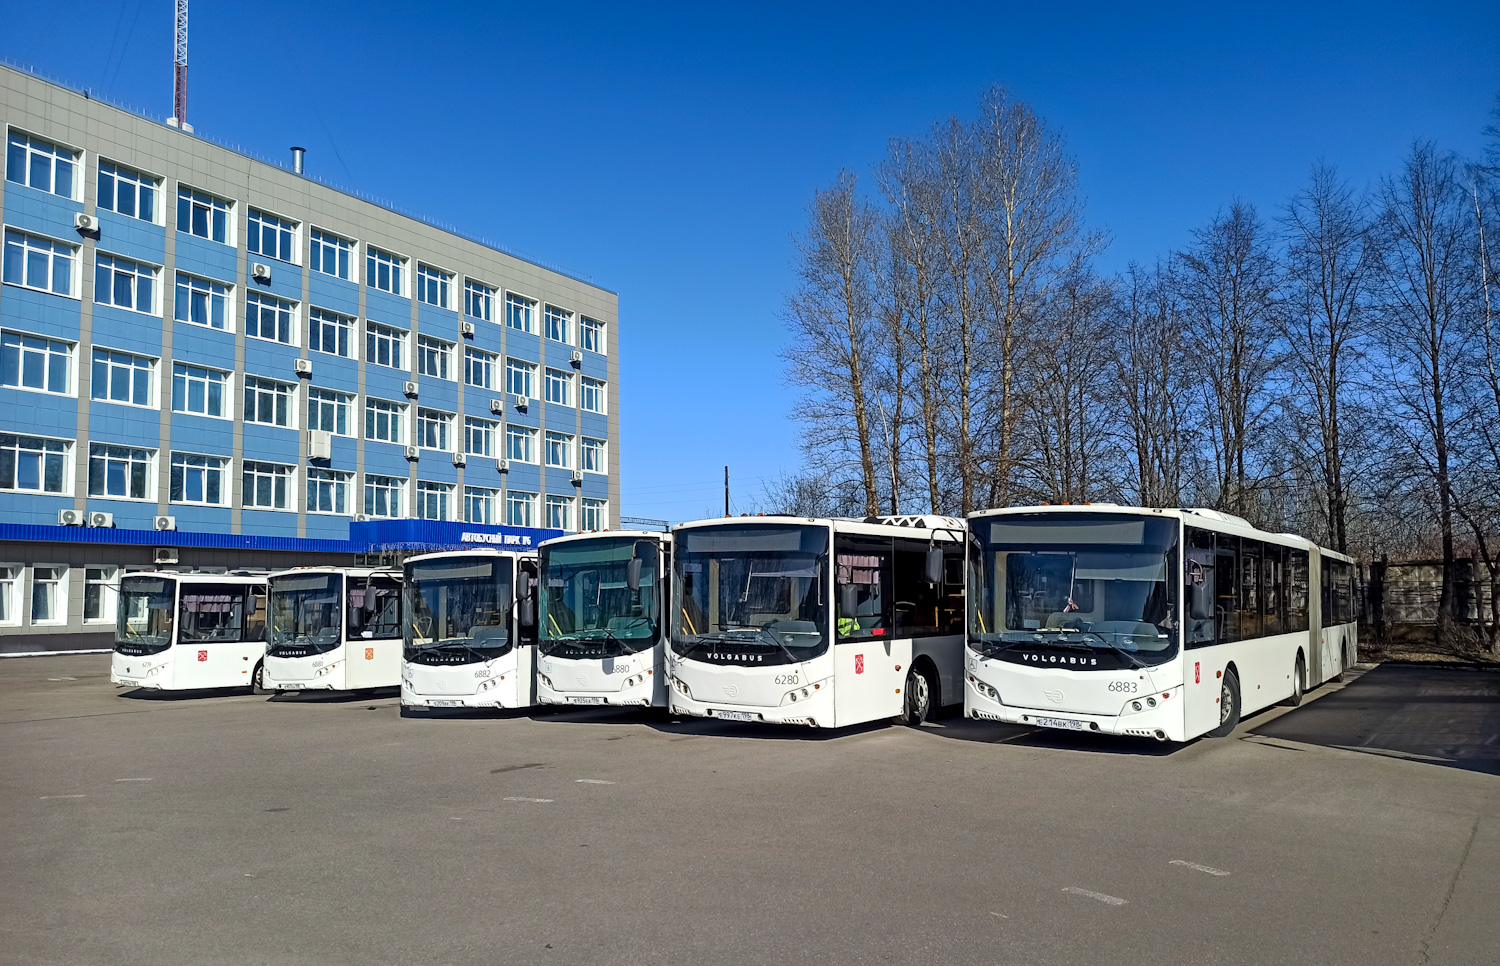 Sankt Petersburg, Volgabus-6271.05 Nr. 6883; Sankt Petersburg — Bus parks